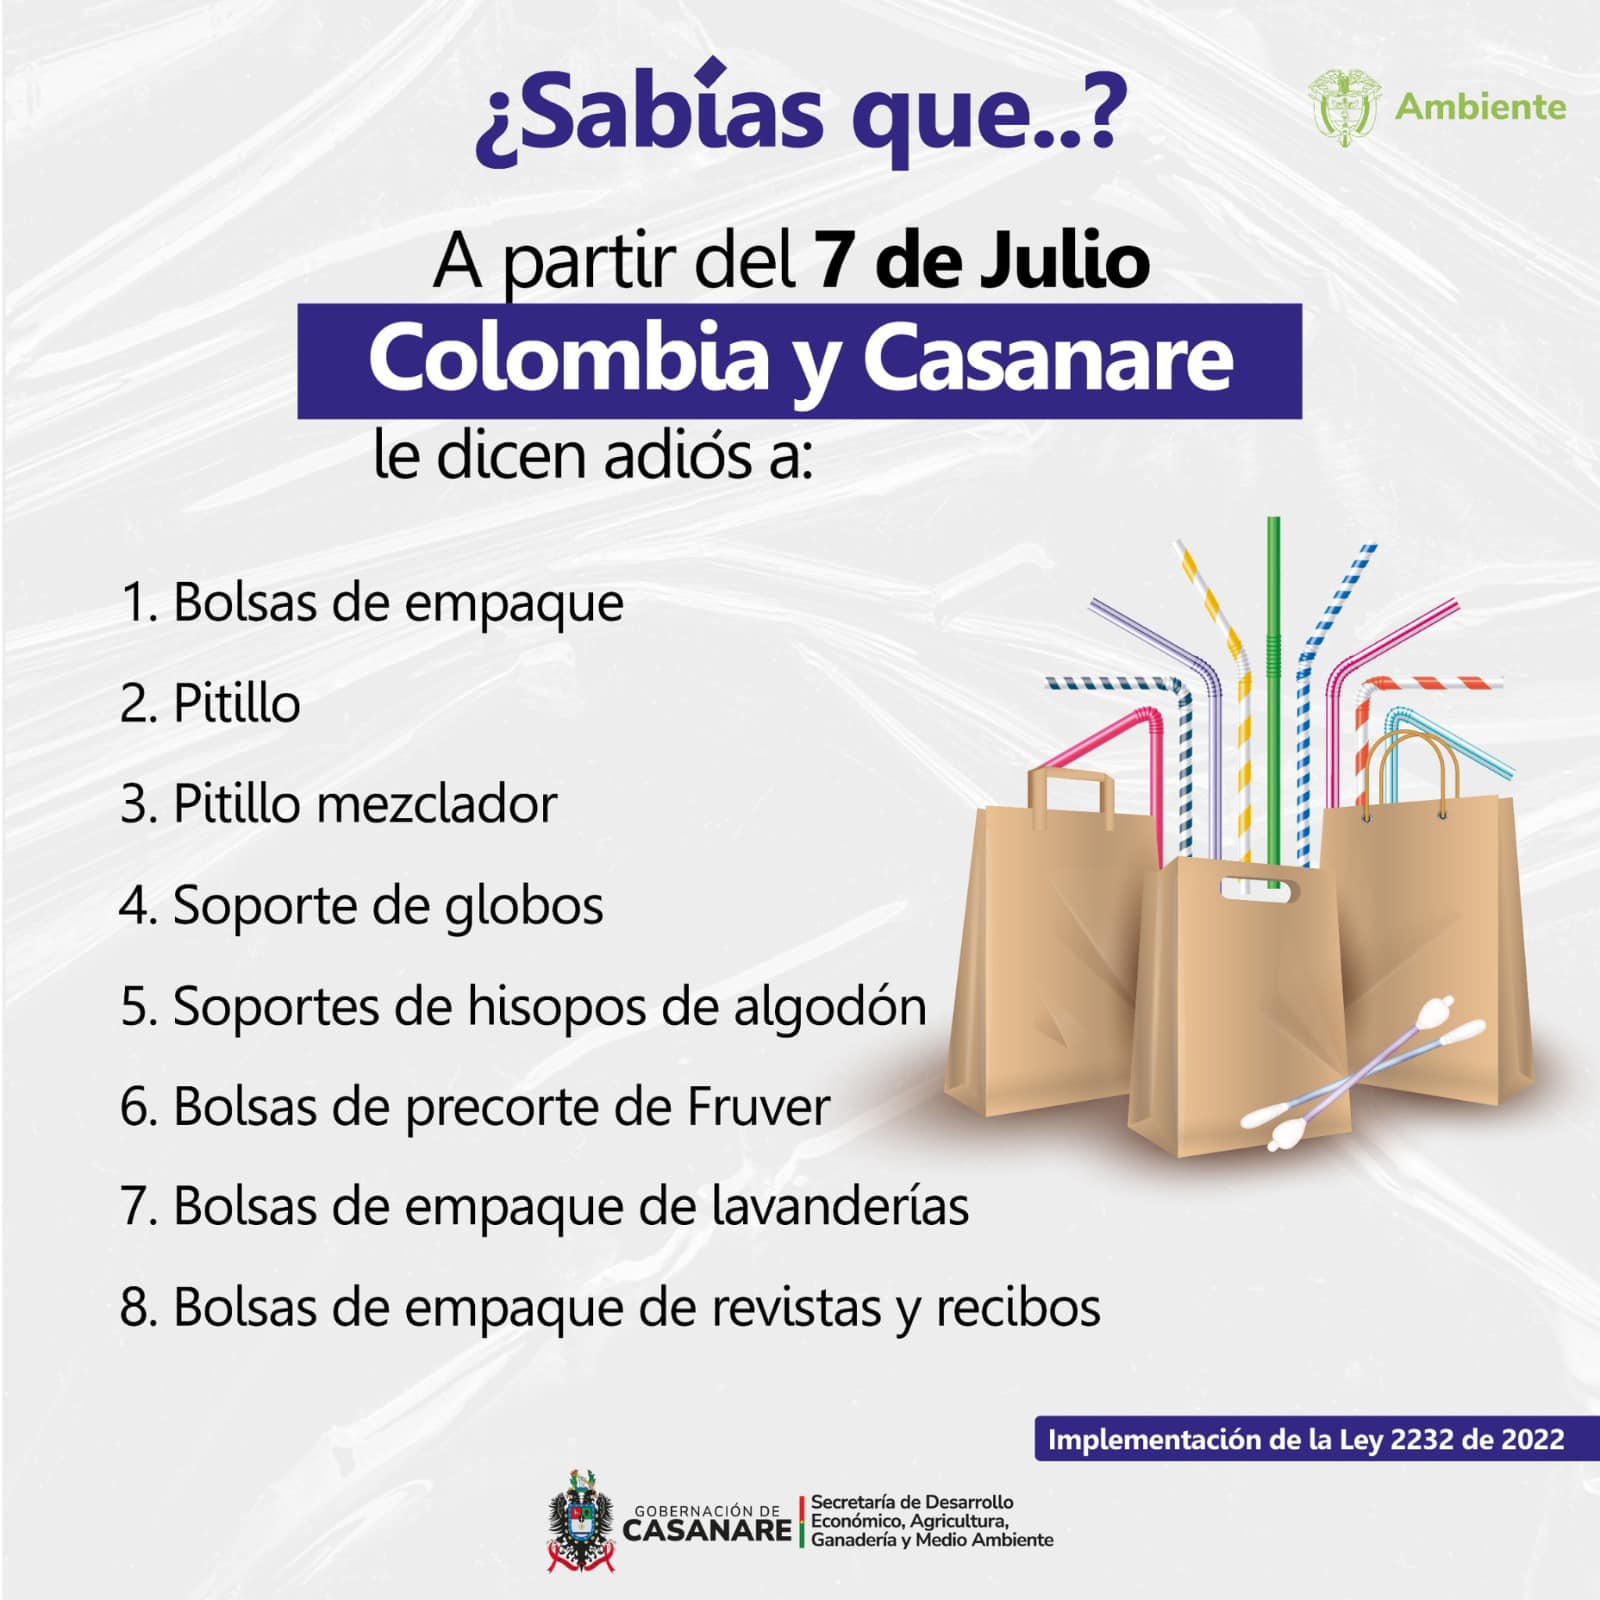 plásticos de un solo uso estarán prohibidos en Colombia